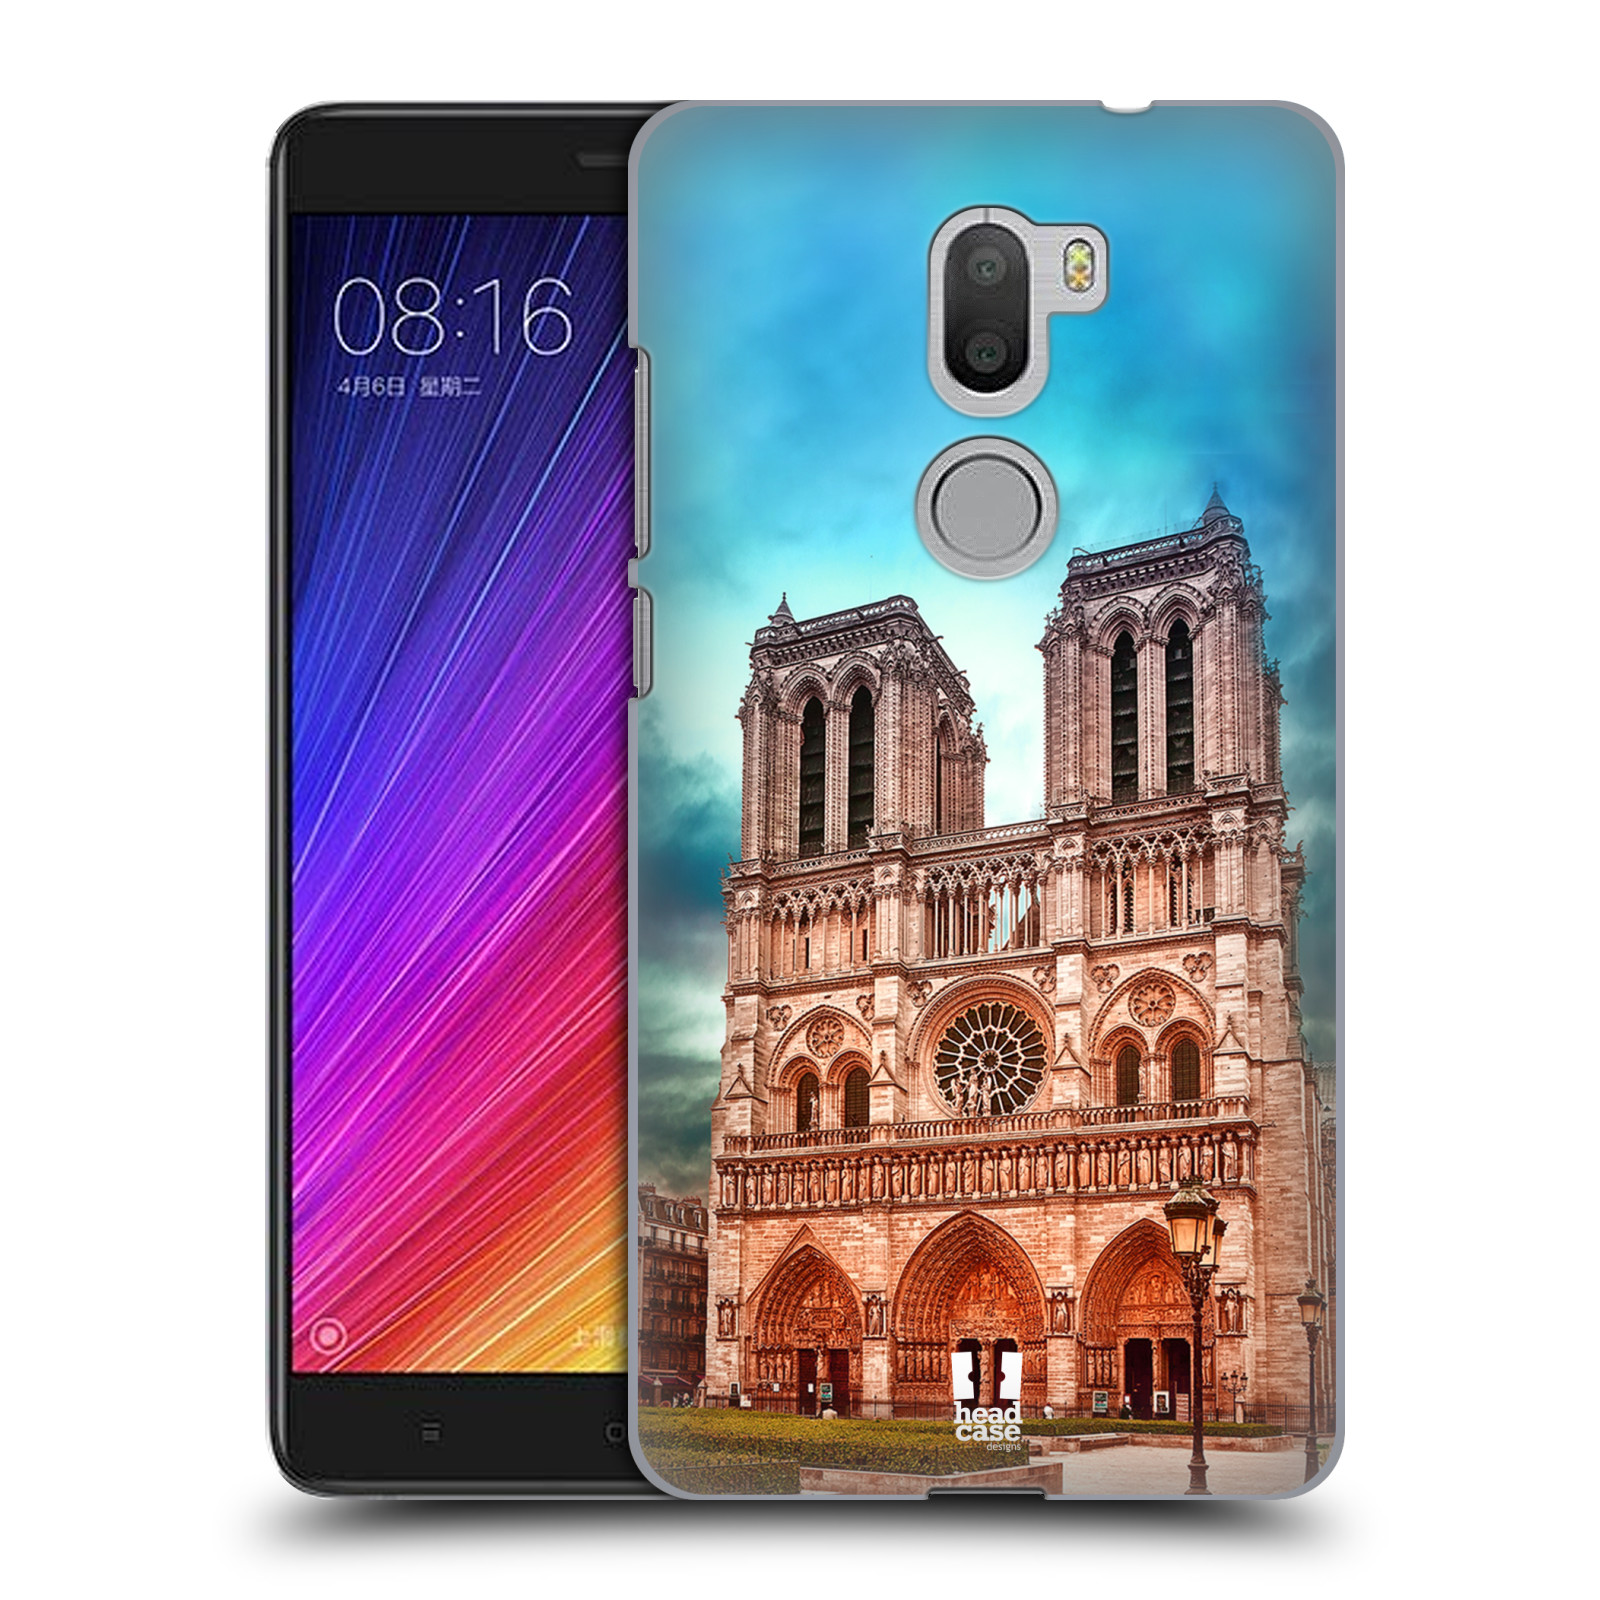 Pouzdro na mobil Xiaomi Mi5s PLUS - HEAD CASE - historická místa katedrála Notre Dame